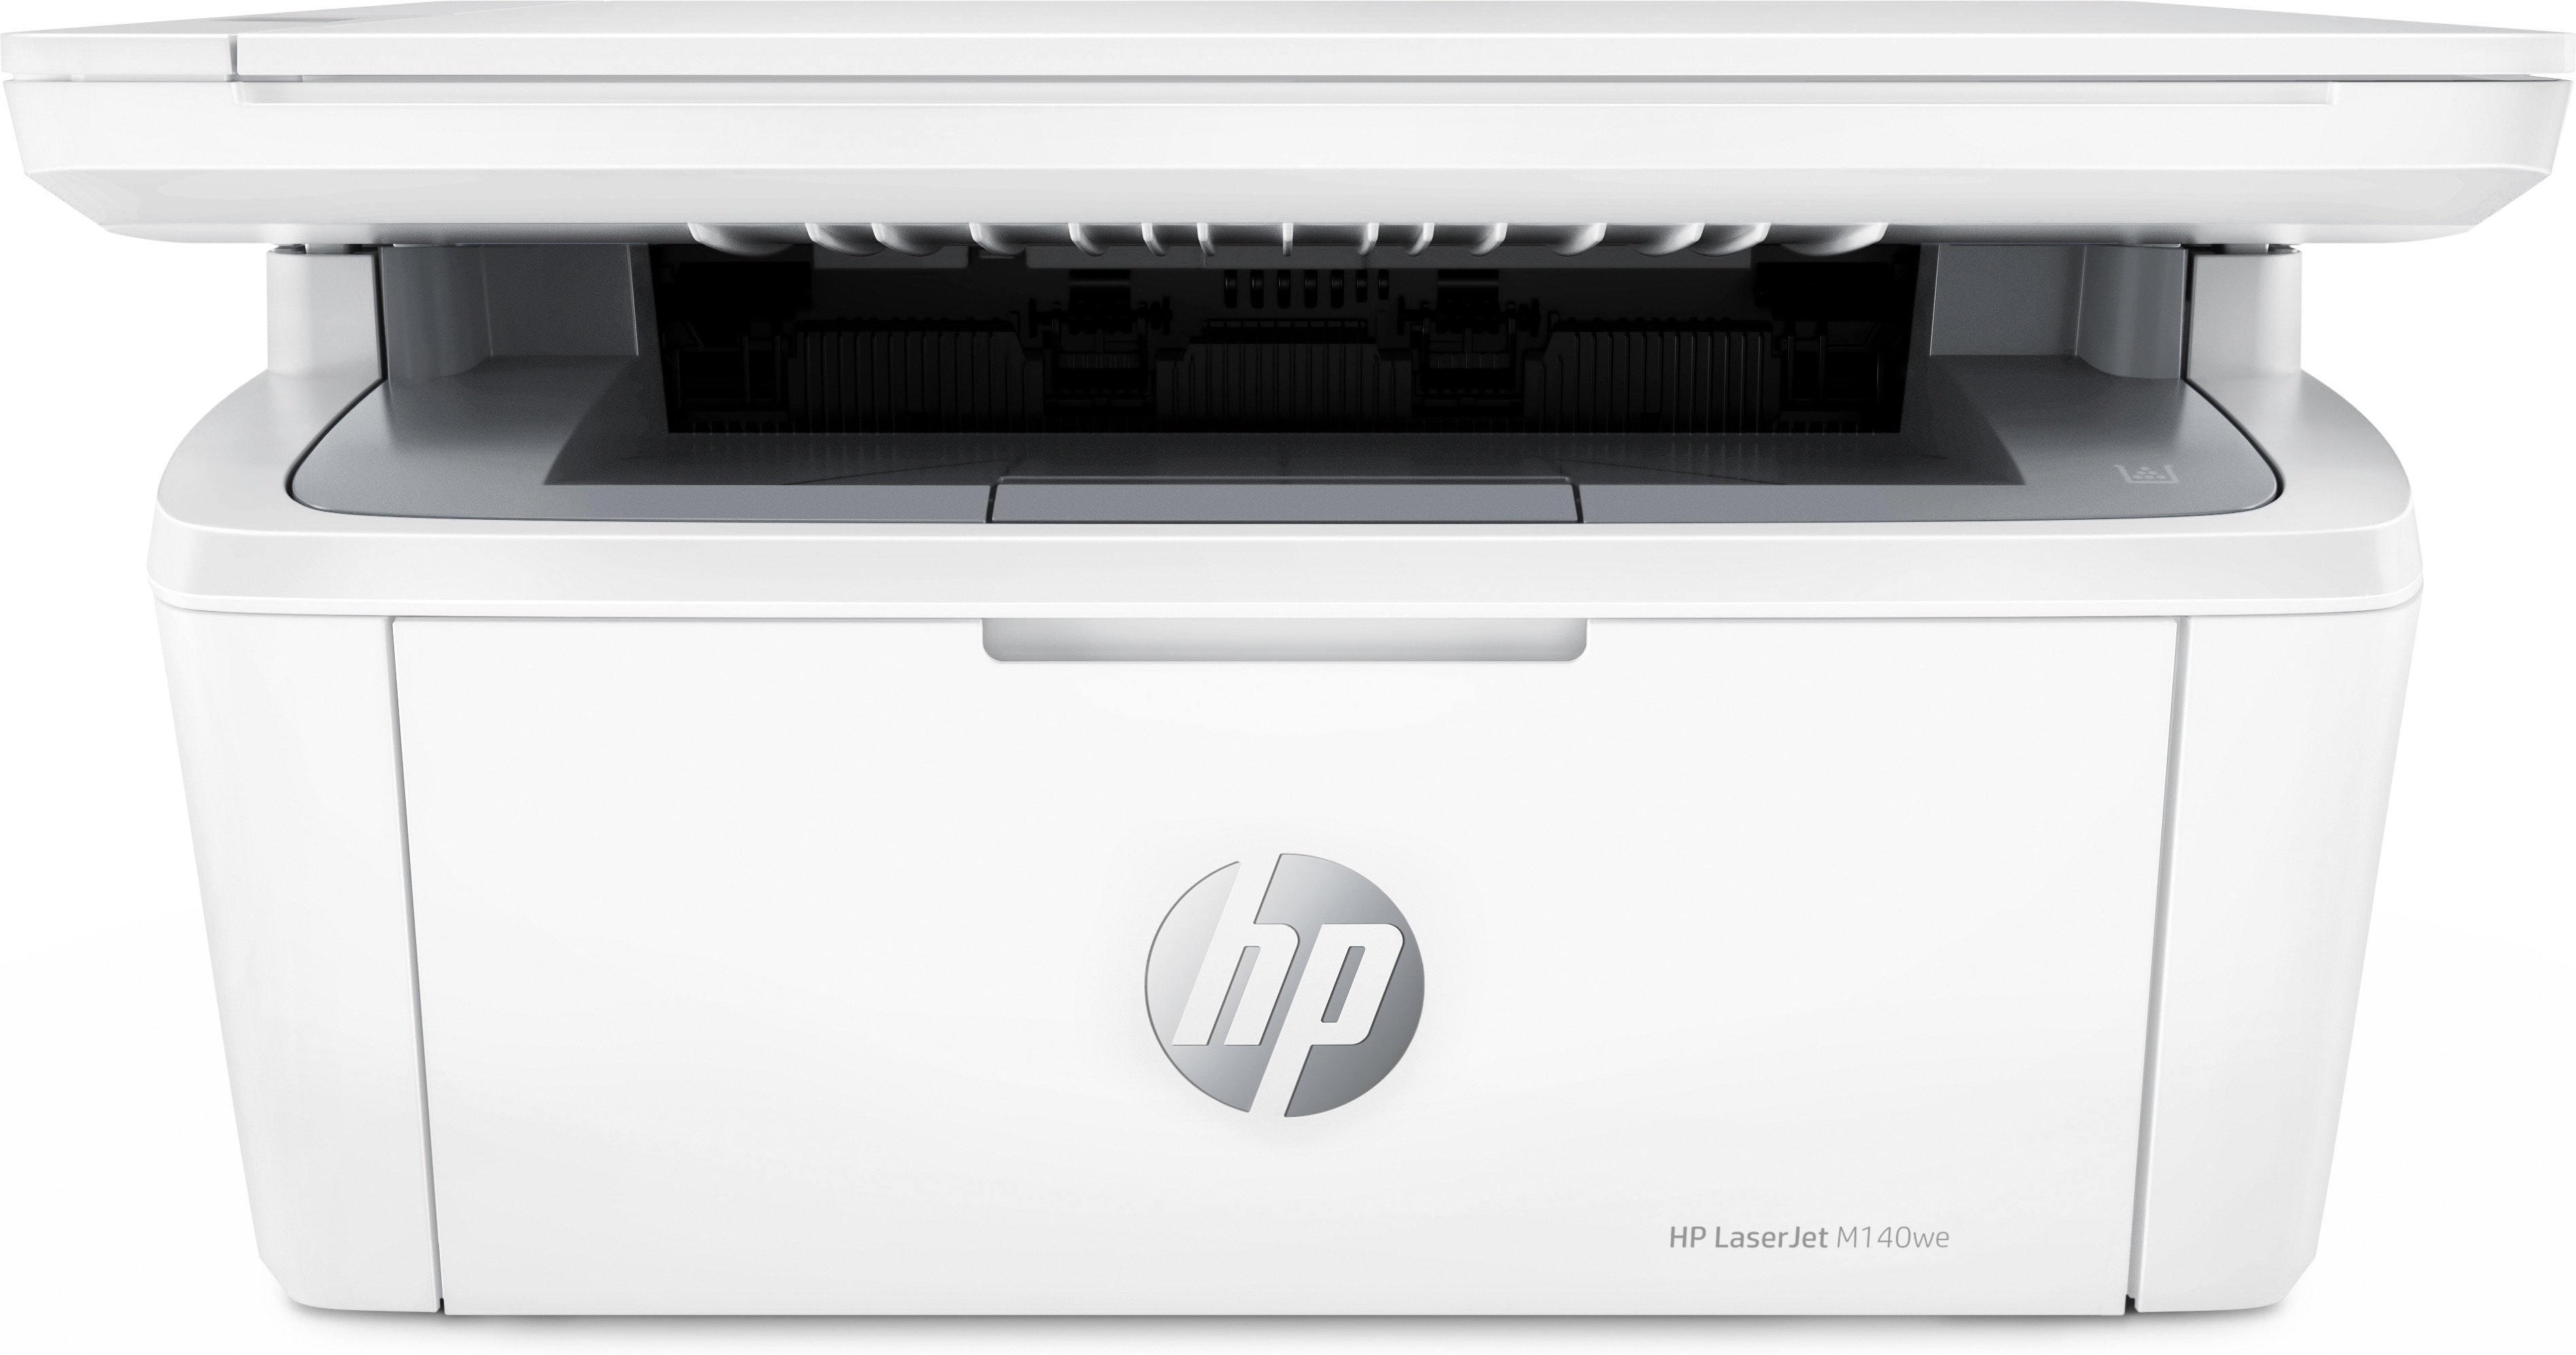 Stal Heel tot nu HP HP LaserJet MFP M140we printer, Zwart-wit, Printer voor Kleine kantoren,  Printen, kopiëren, scannen, Draadloos; Scannen naar e-mail; Scannen naar  pdf (7MD72E#B19) - Dustin België